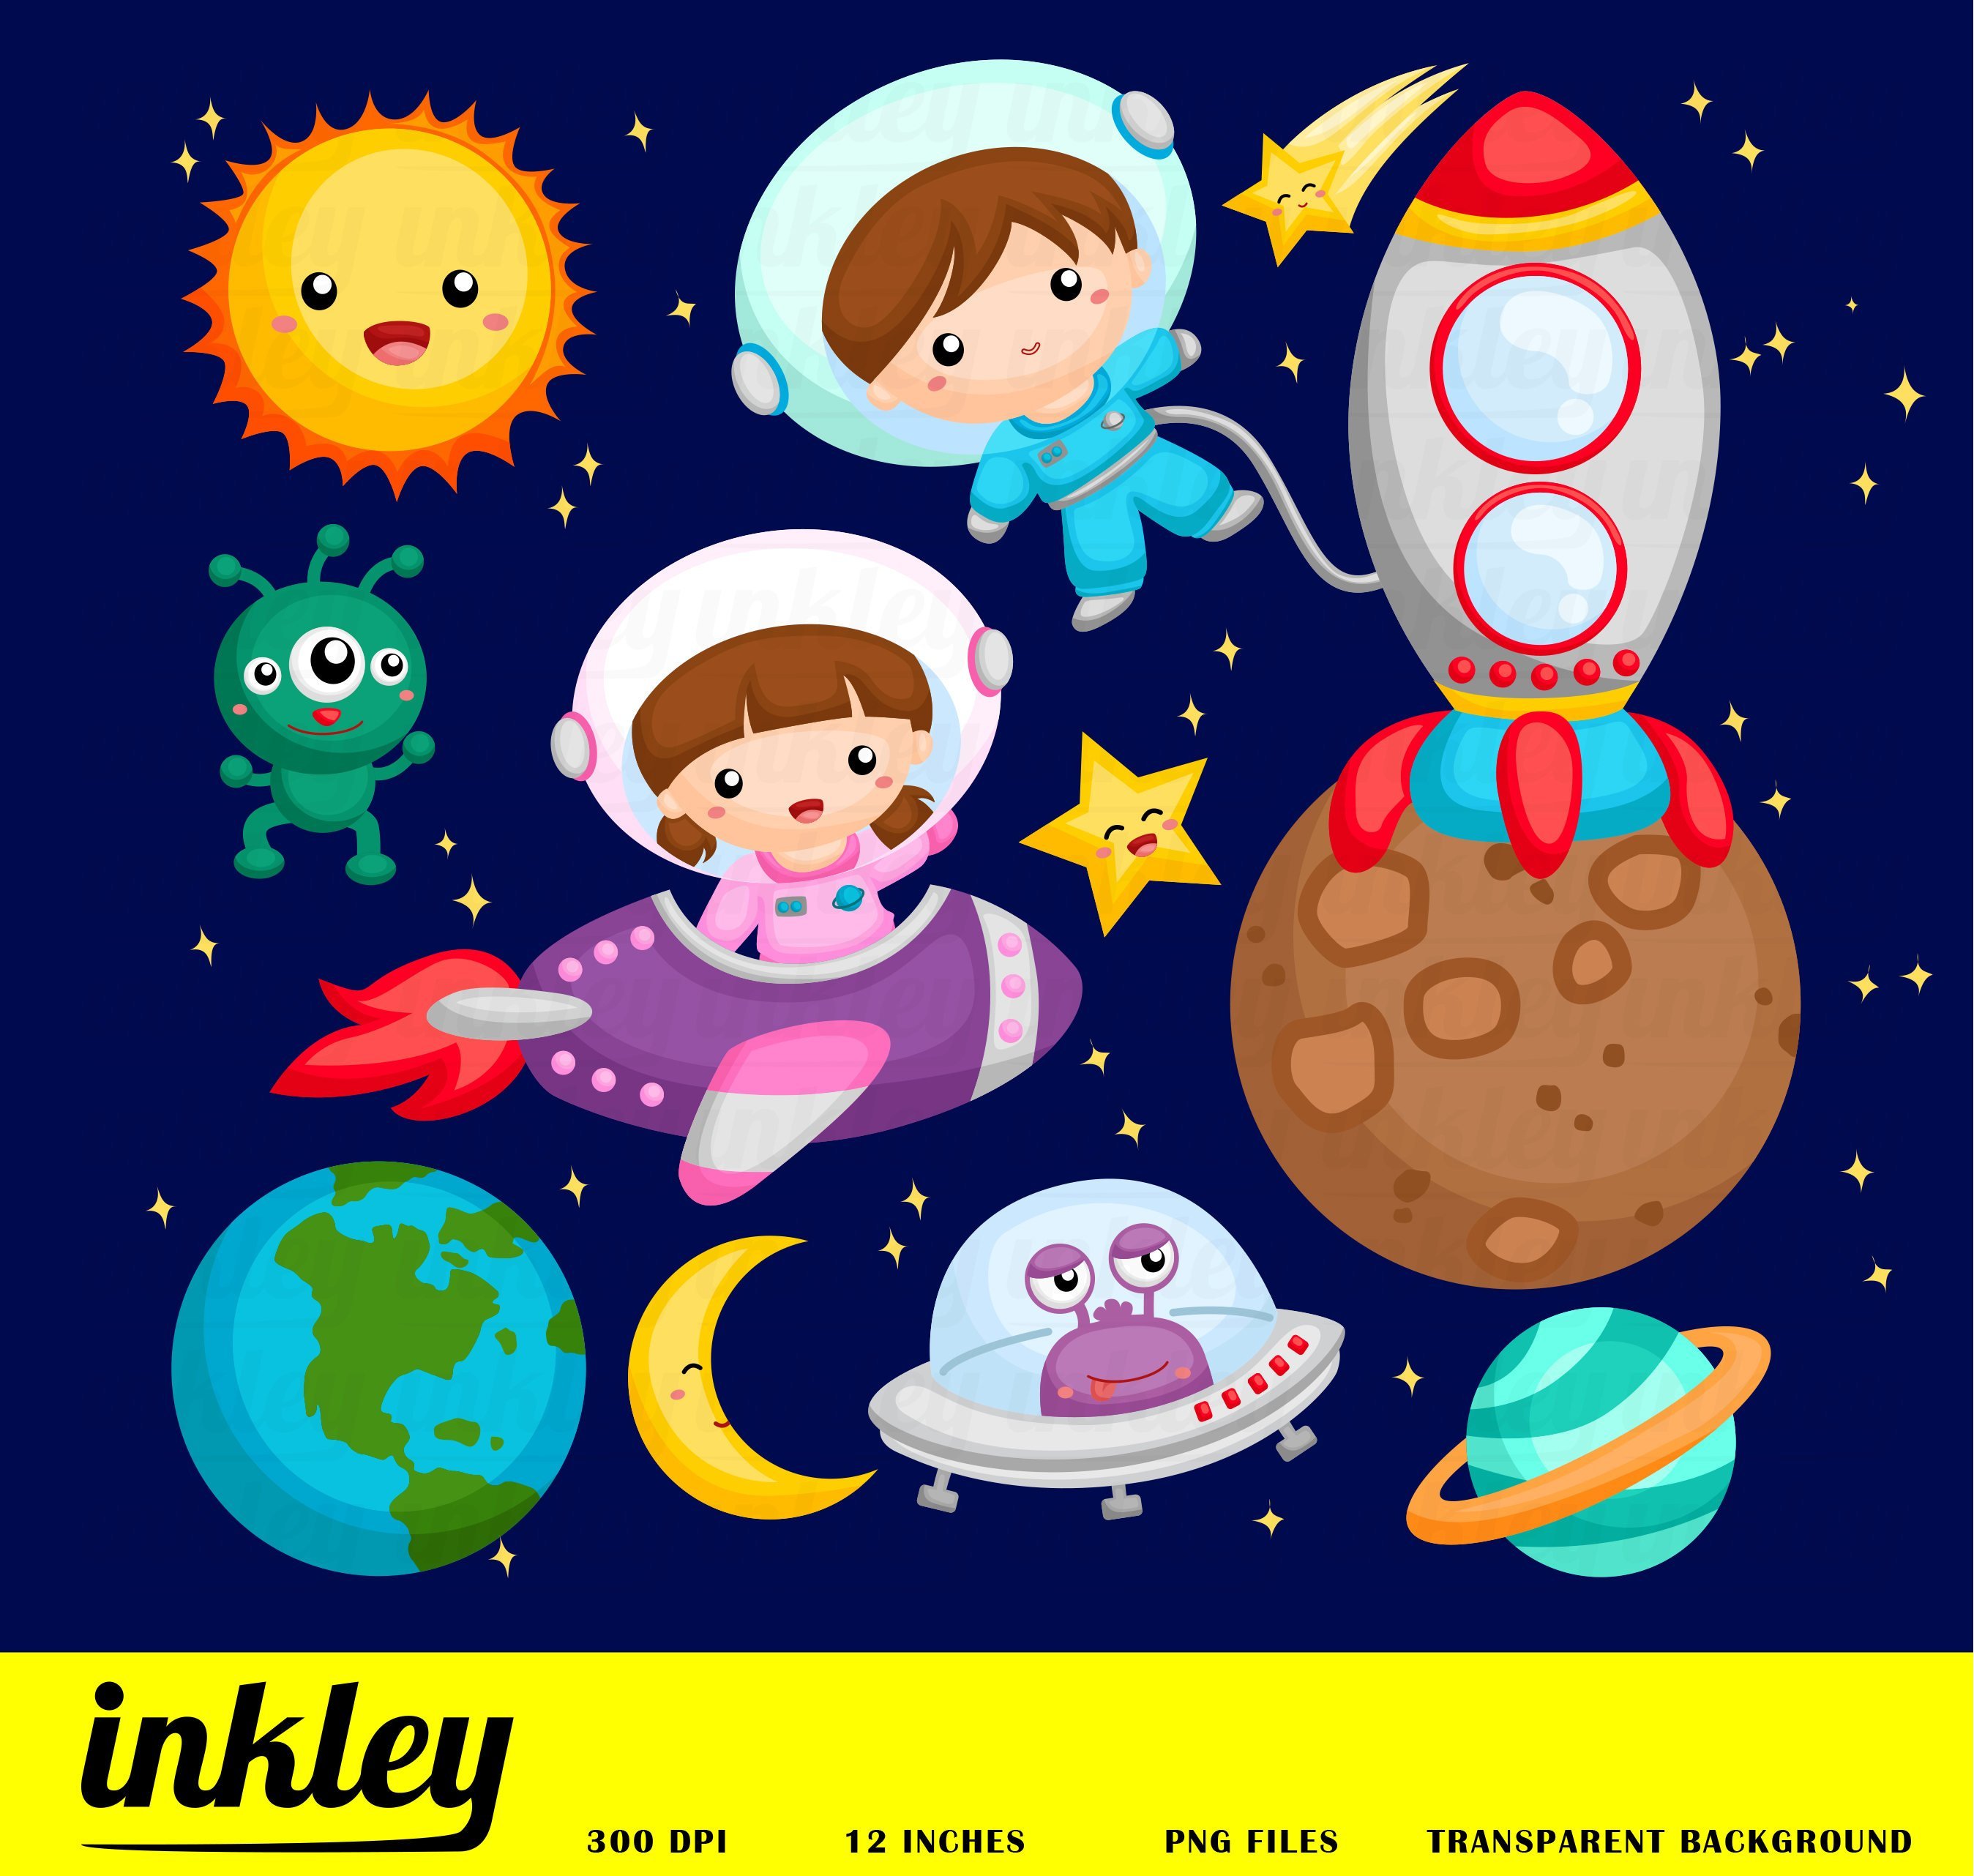 Картинки на тему космос для дошкольников. Космос для дошкольников. Космос иллюстрации для детей. Детям о космосе. Космос картинки для детей.